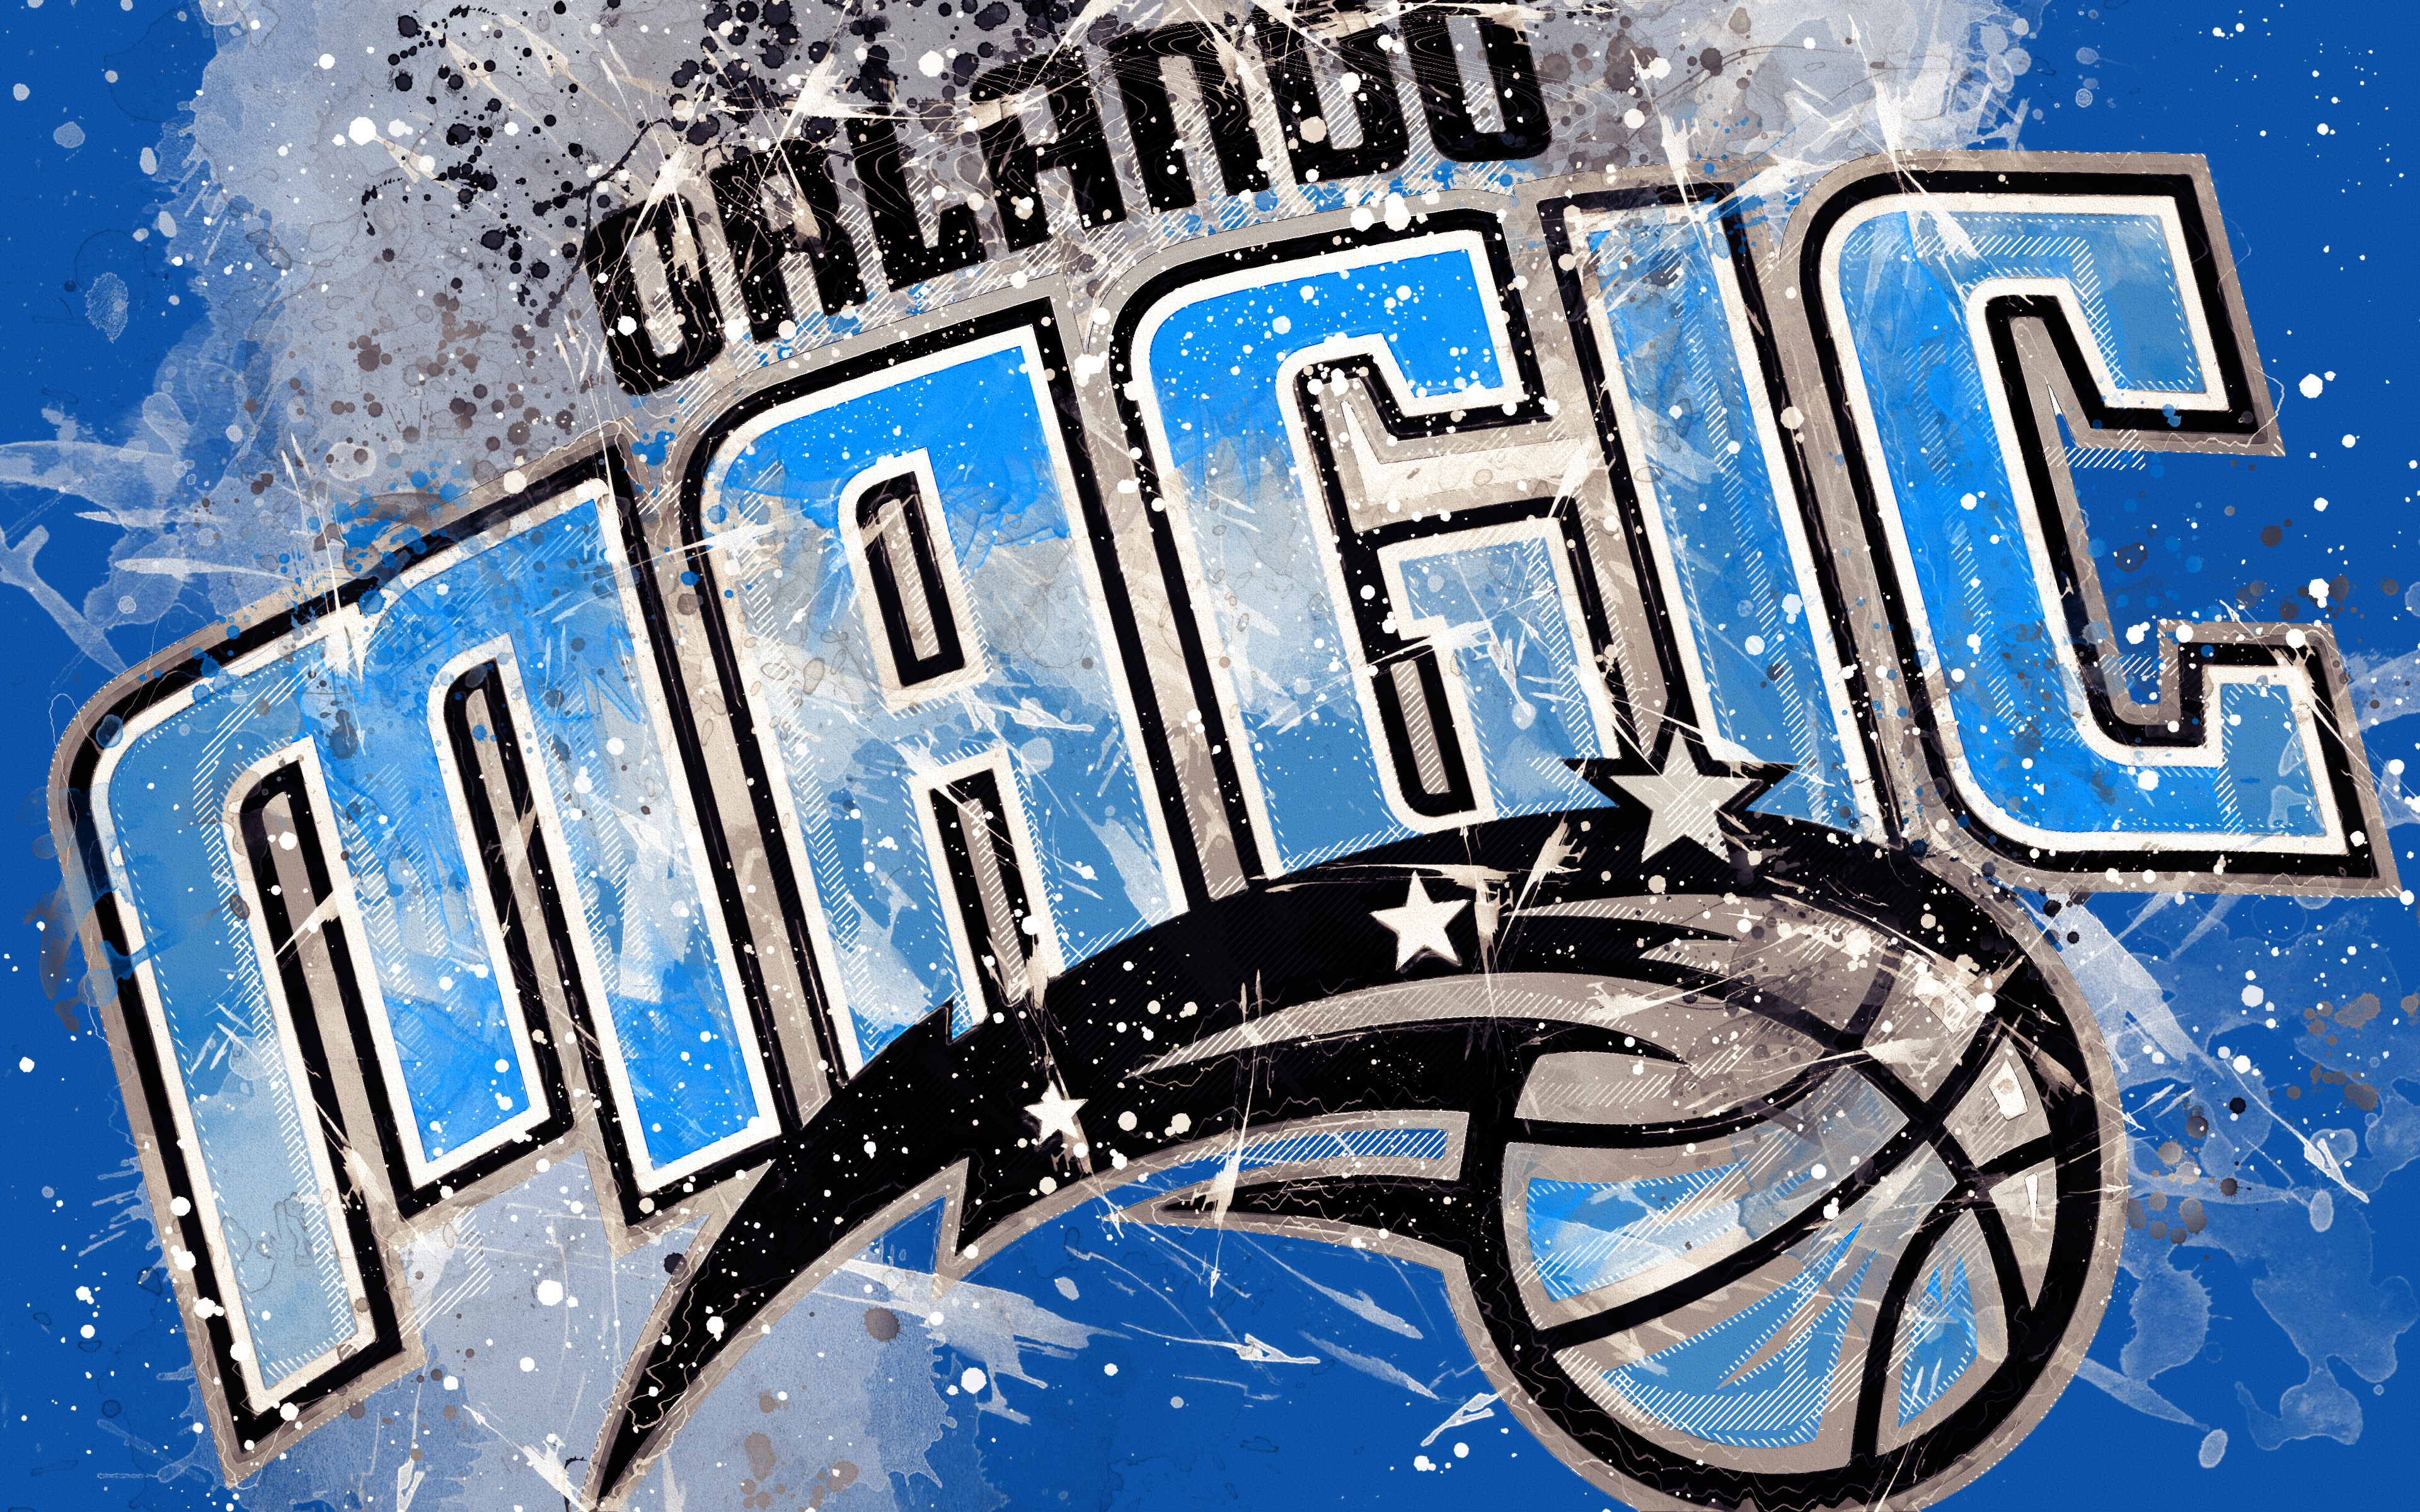 Orlando Magic Wallpapers  Basketball Wallpapers at